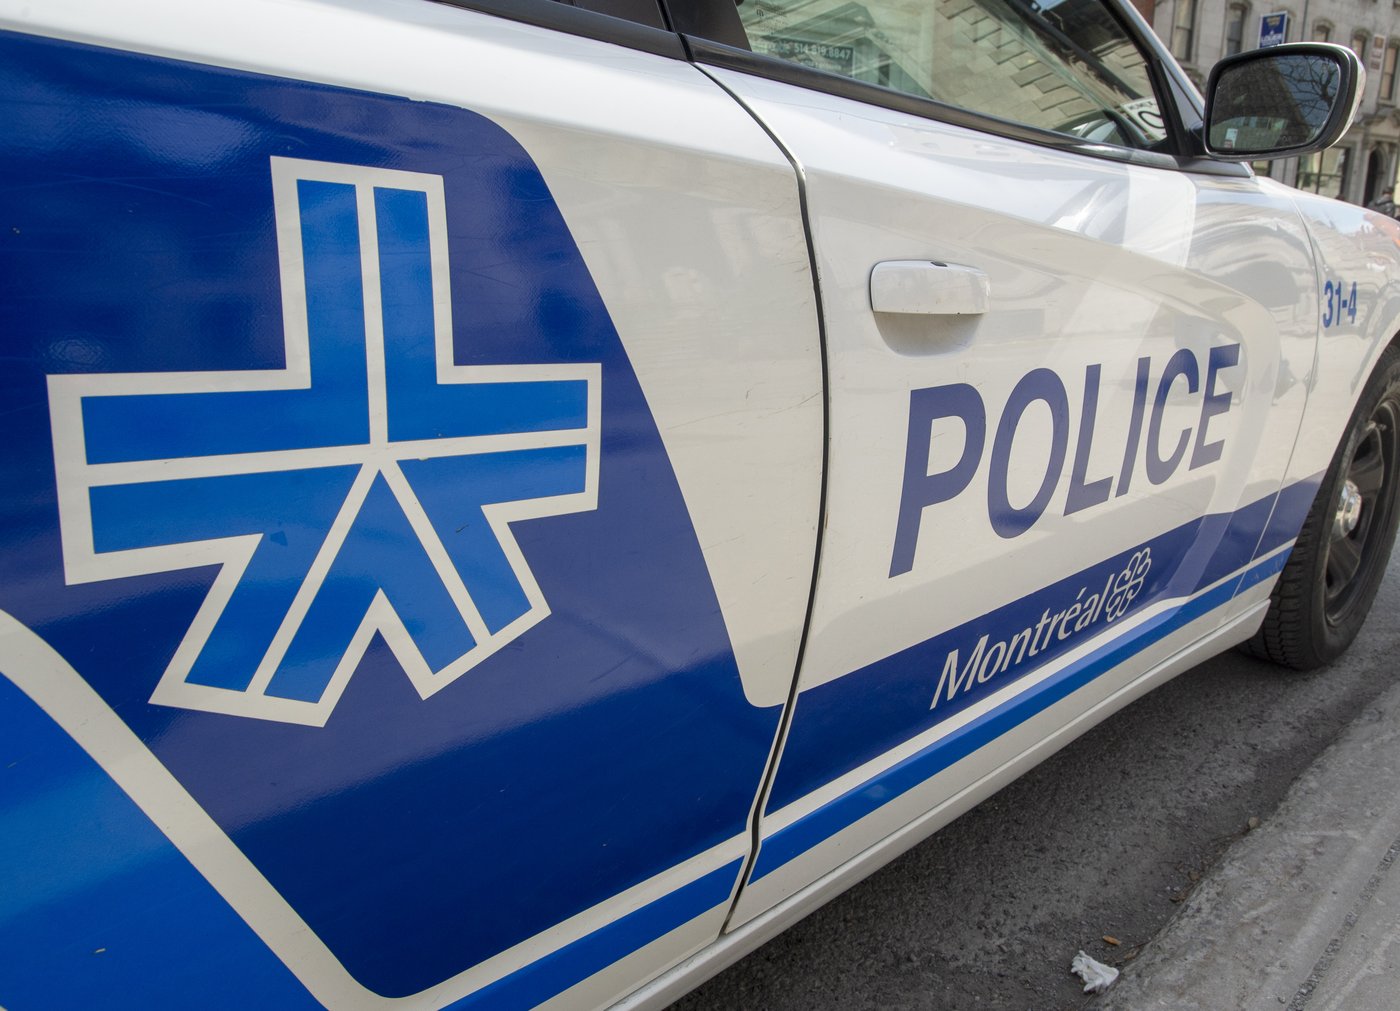 Un cycliste est blessé grièvement lors d’une collision à Montréal: le SPVM enquête